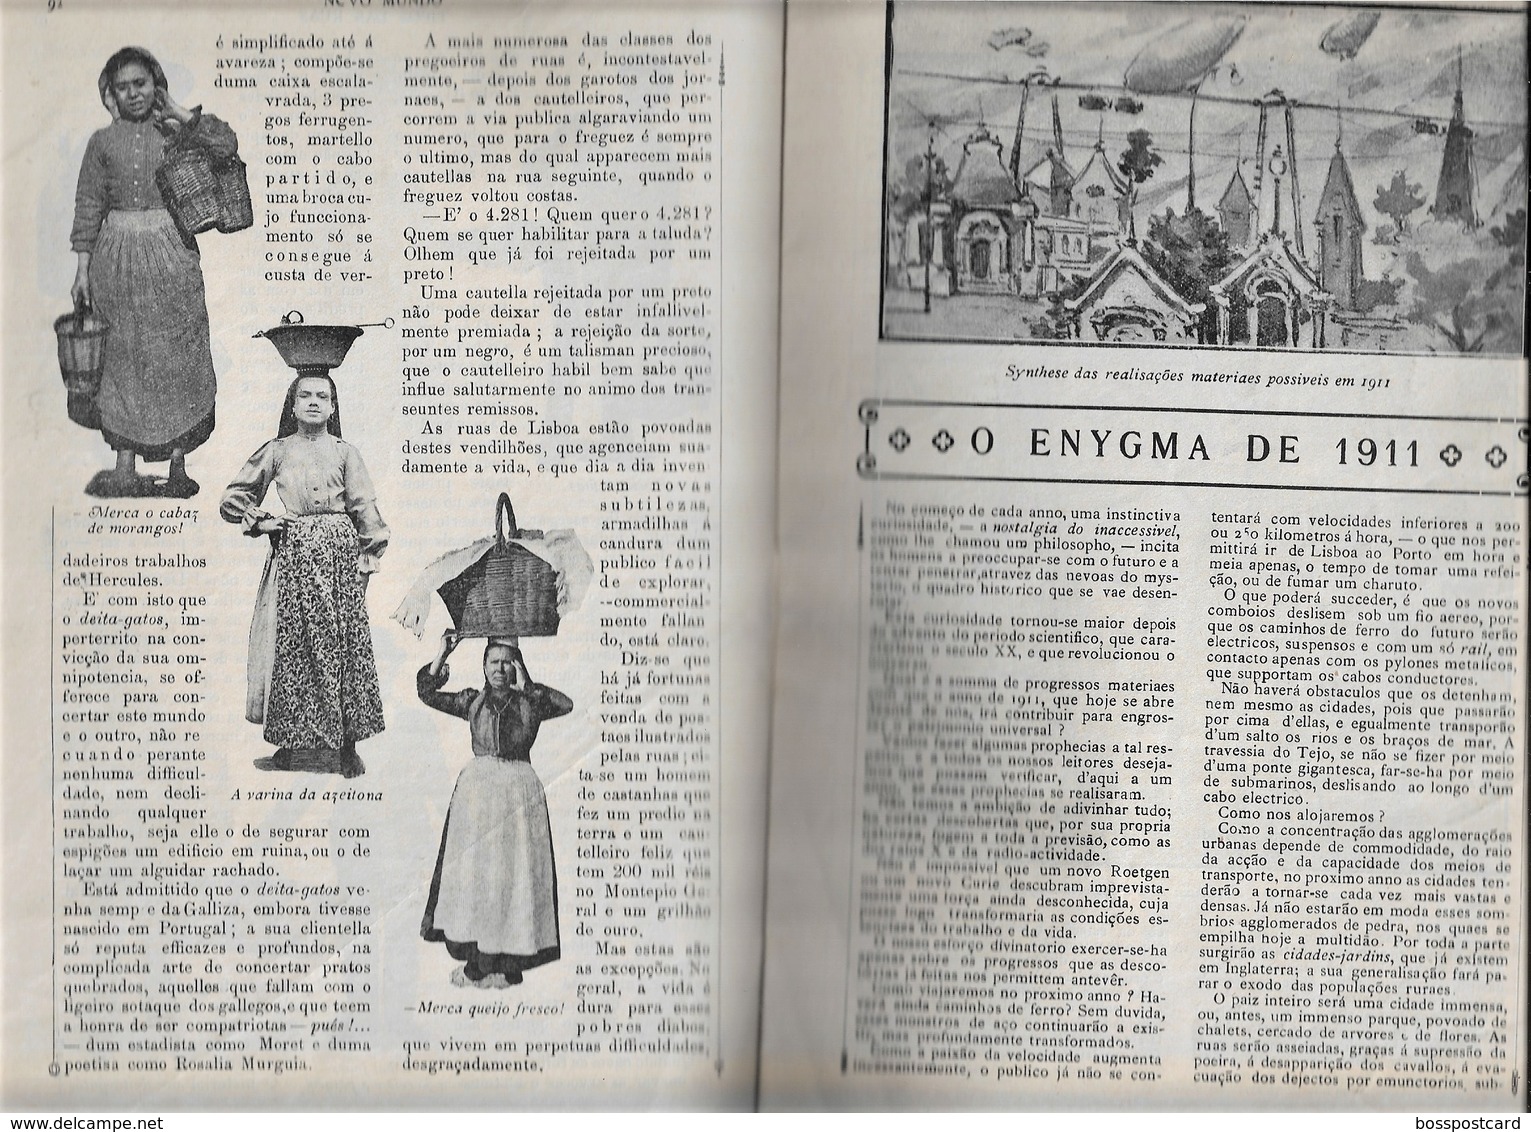 Porto - Gaia - Novo Mundo De Janeiro De 1911 - Publicidade - Portugal - Algemene Informatie